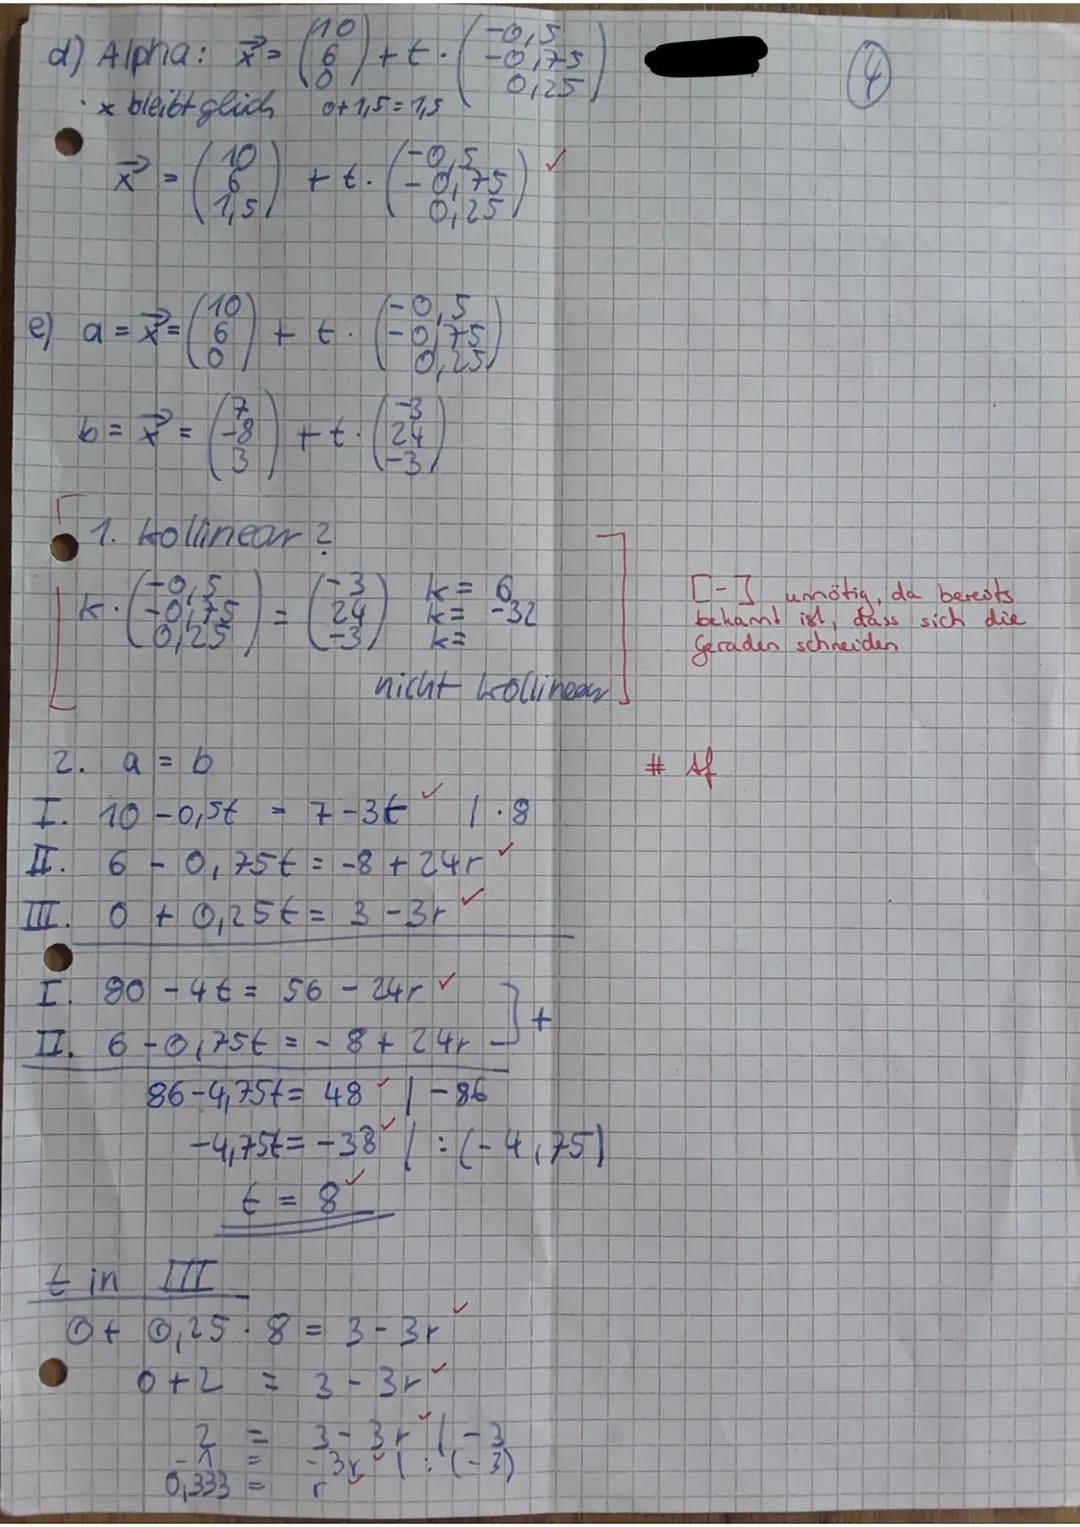 Q1 Mathematik GK-4. Klausur
Name:
Aufgabe 2 (Vektoren darstellen)
Gegeben
sind
die
Punkte
ř= AB, S = CD, t = BE und u = CA.
Teil I: Hilfsmit